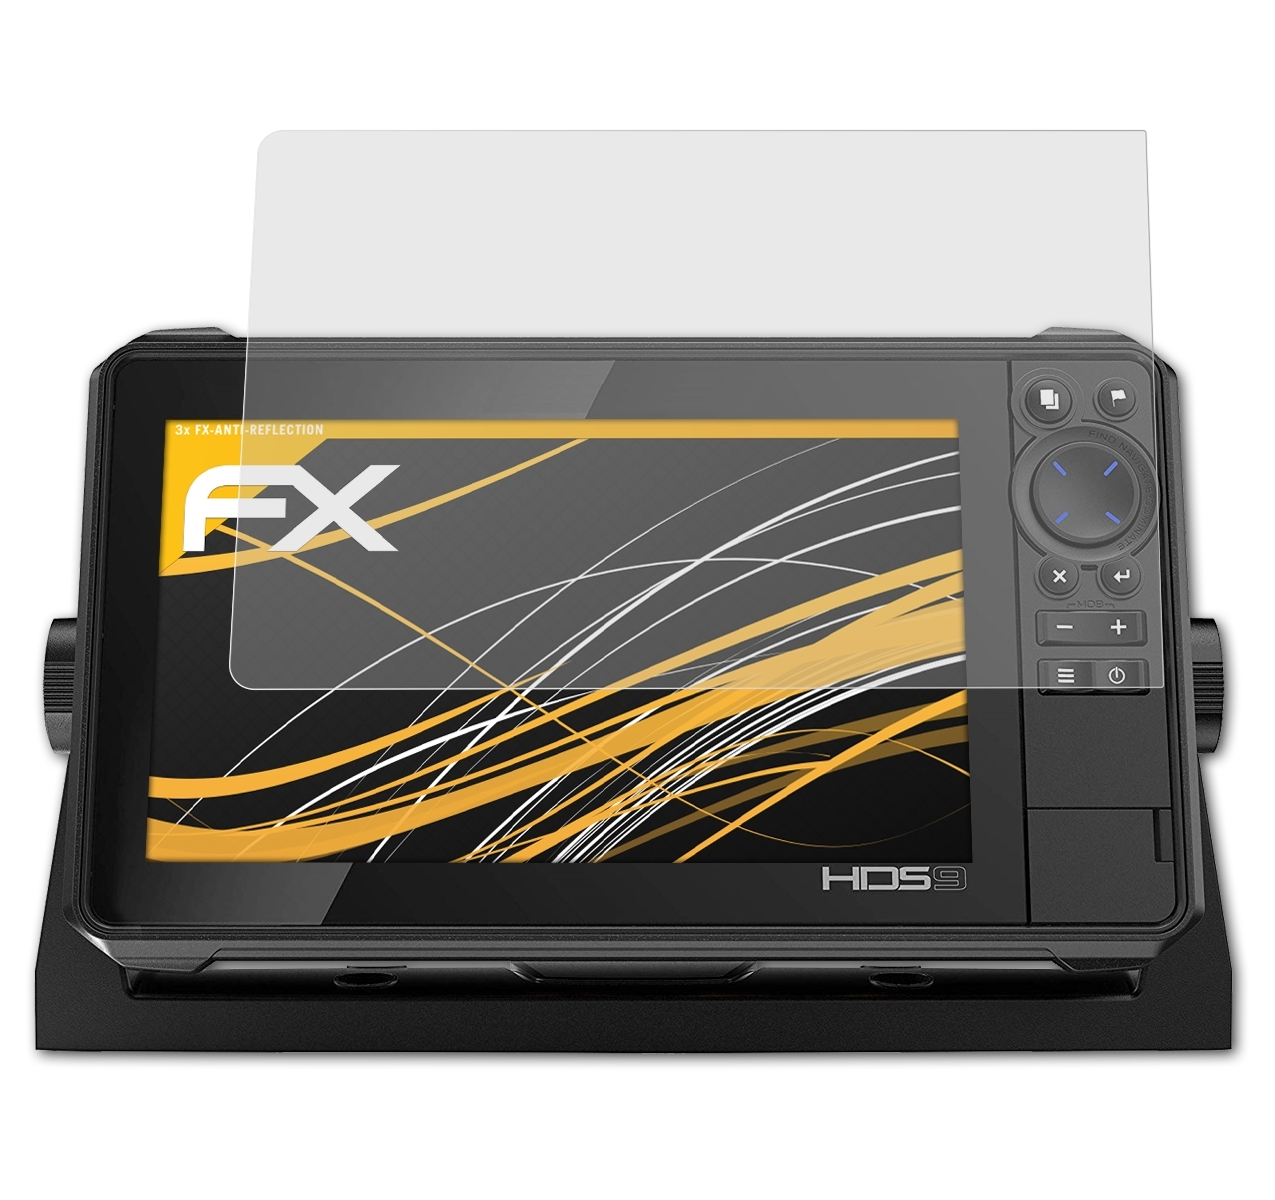 HDS Lowrance 9) FX-Antireflex Live 3x Displayschutz(für ATFOLIX